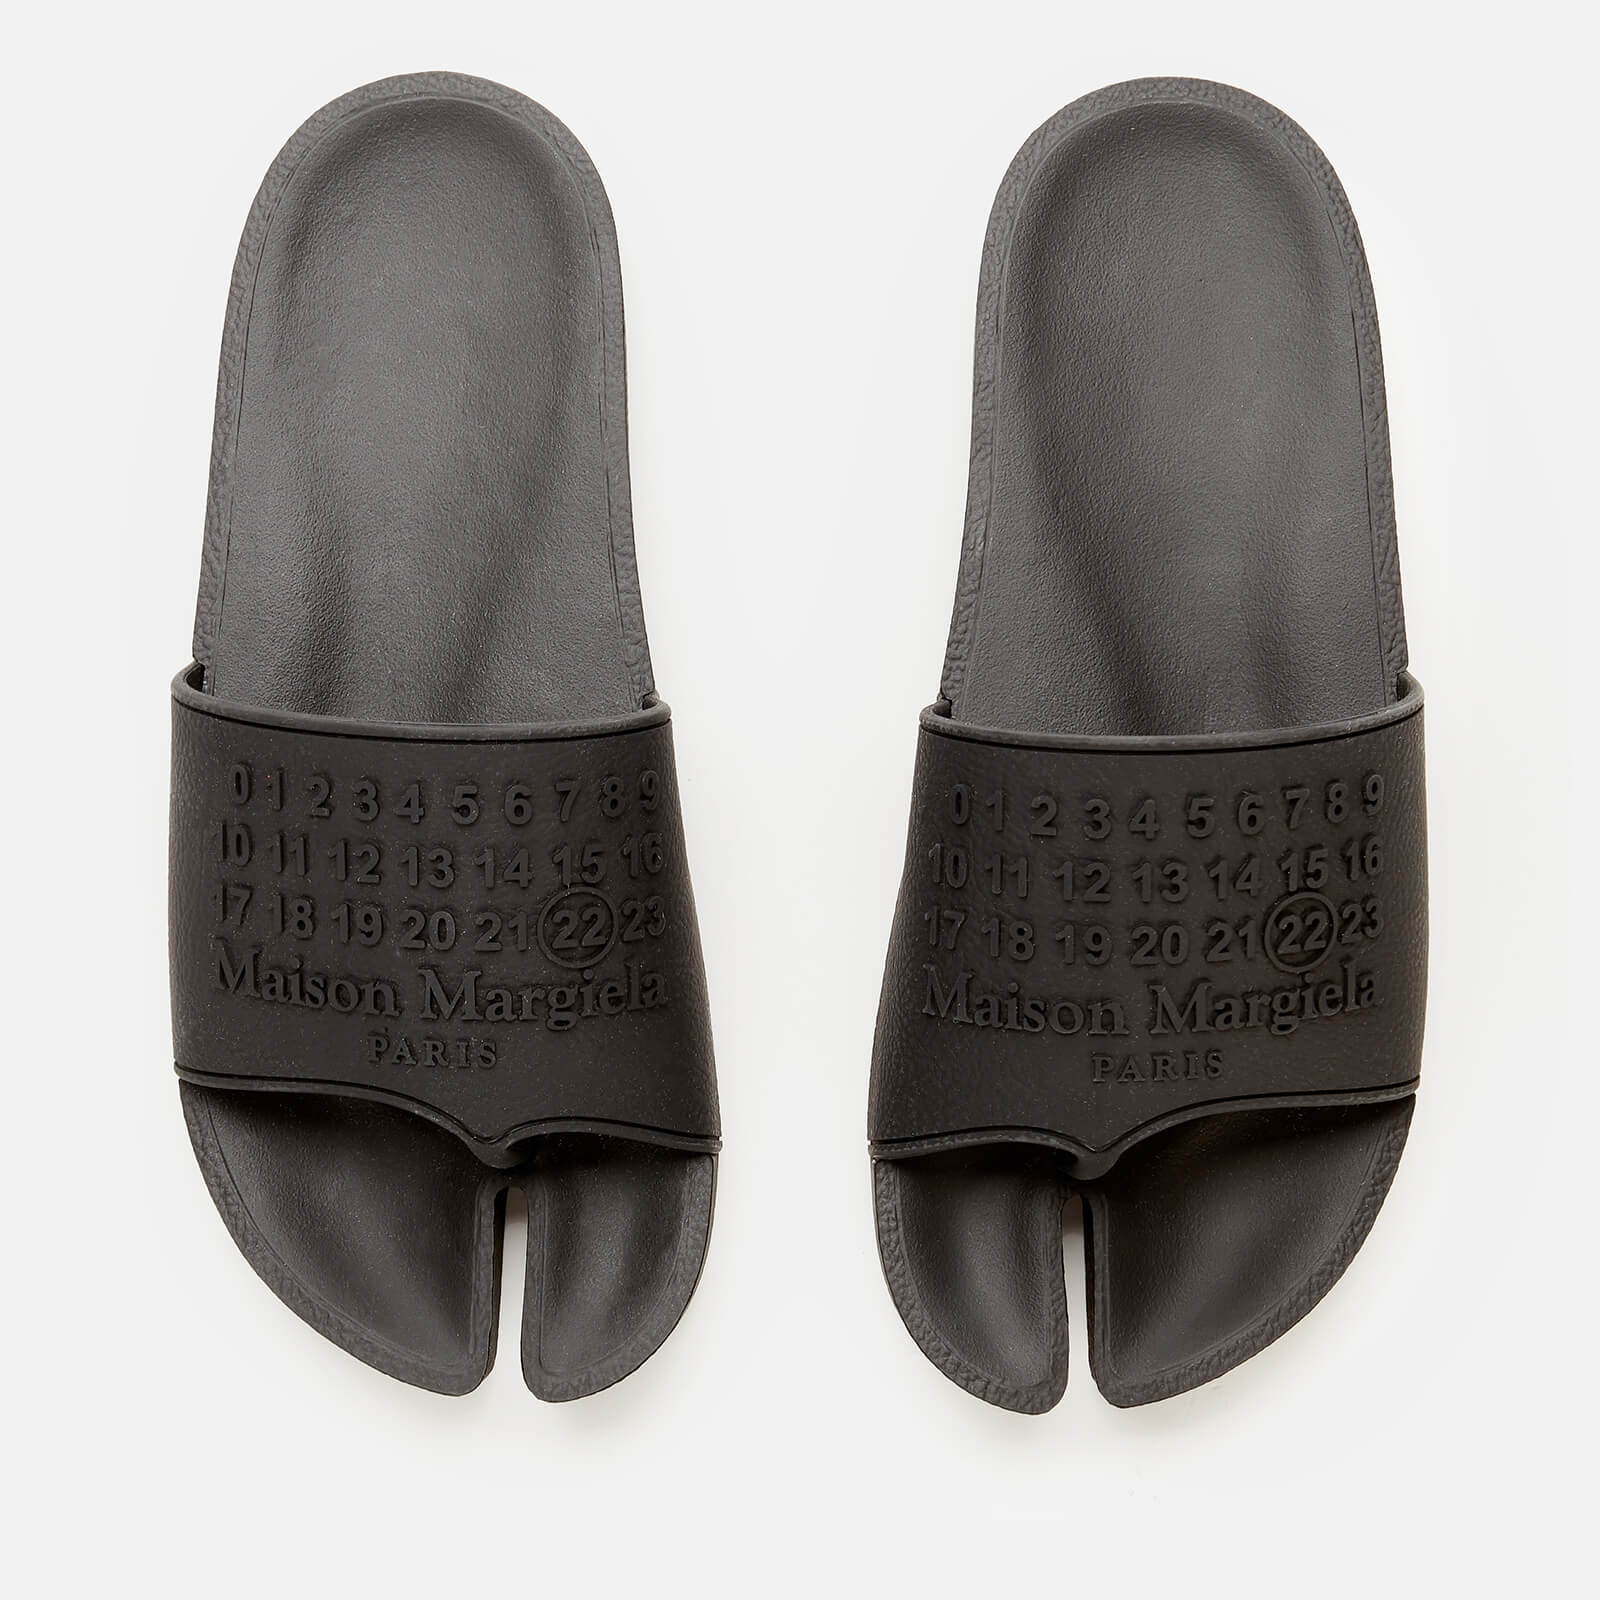 Maison Margiela Men's Slide Sandals - Black - UK 7